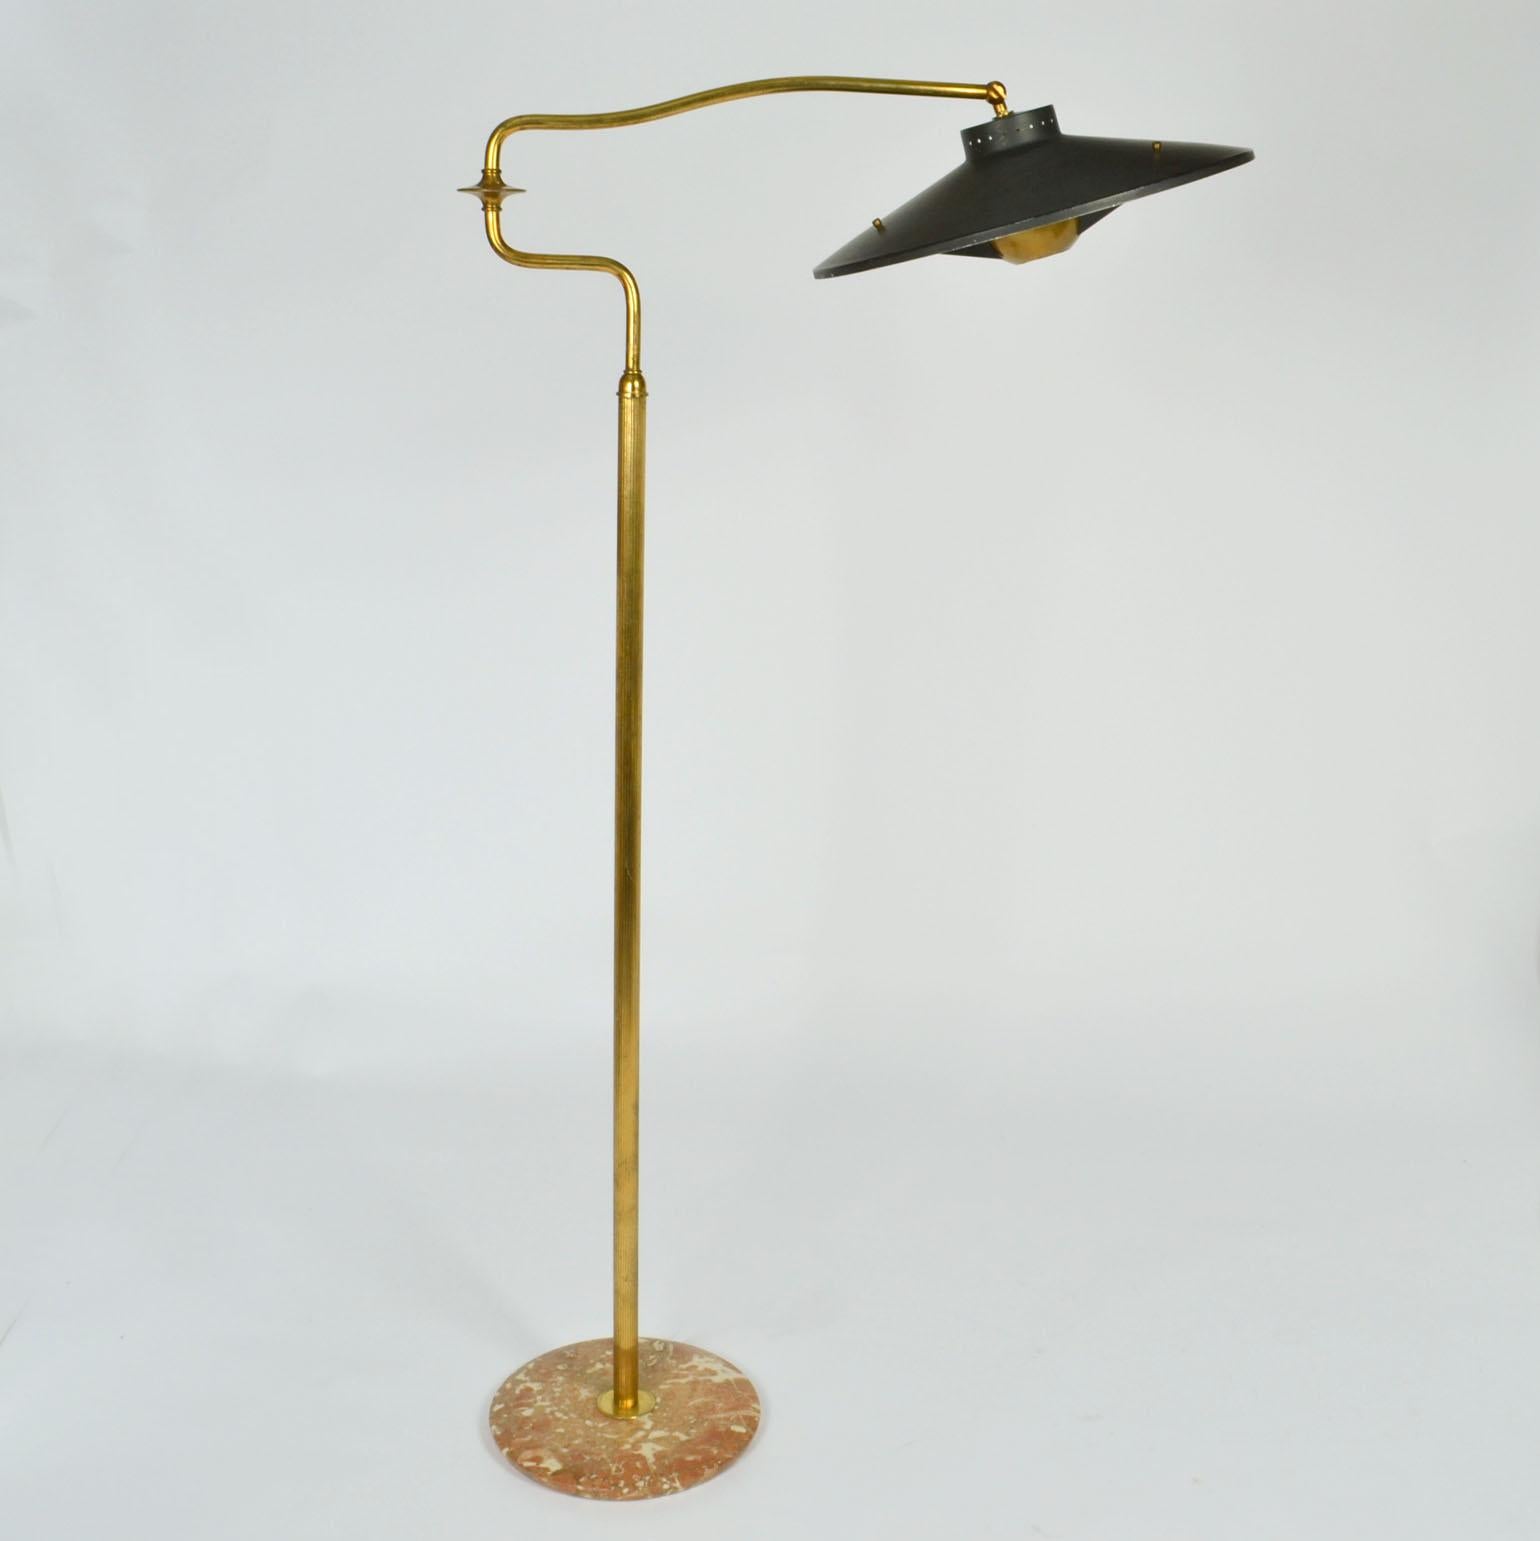 Italian Swing Arm Brass Floor Lamp, Original Black Shade, 1950's Stilnovo Style For Sale 6